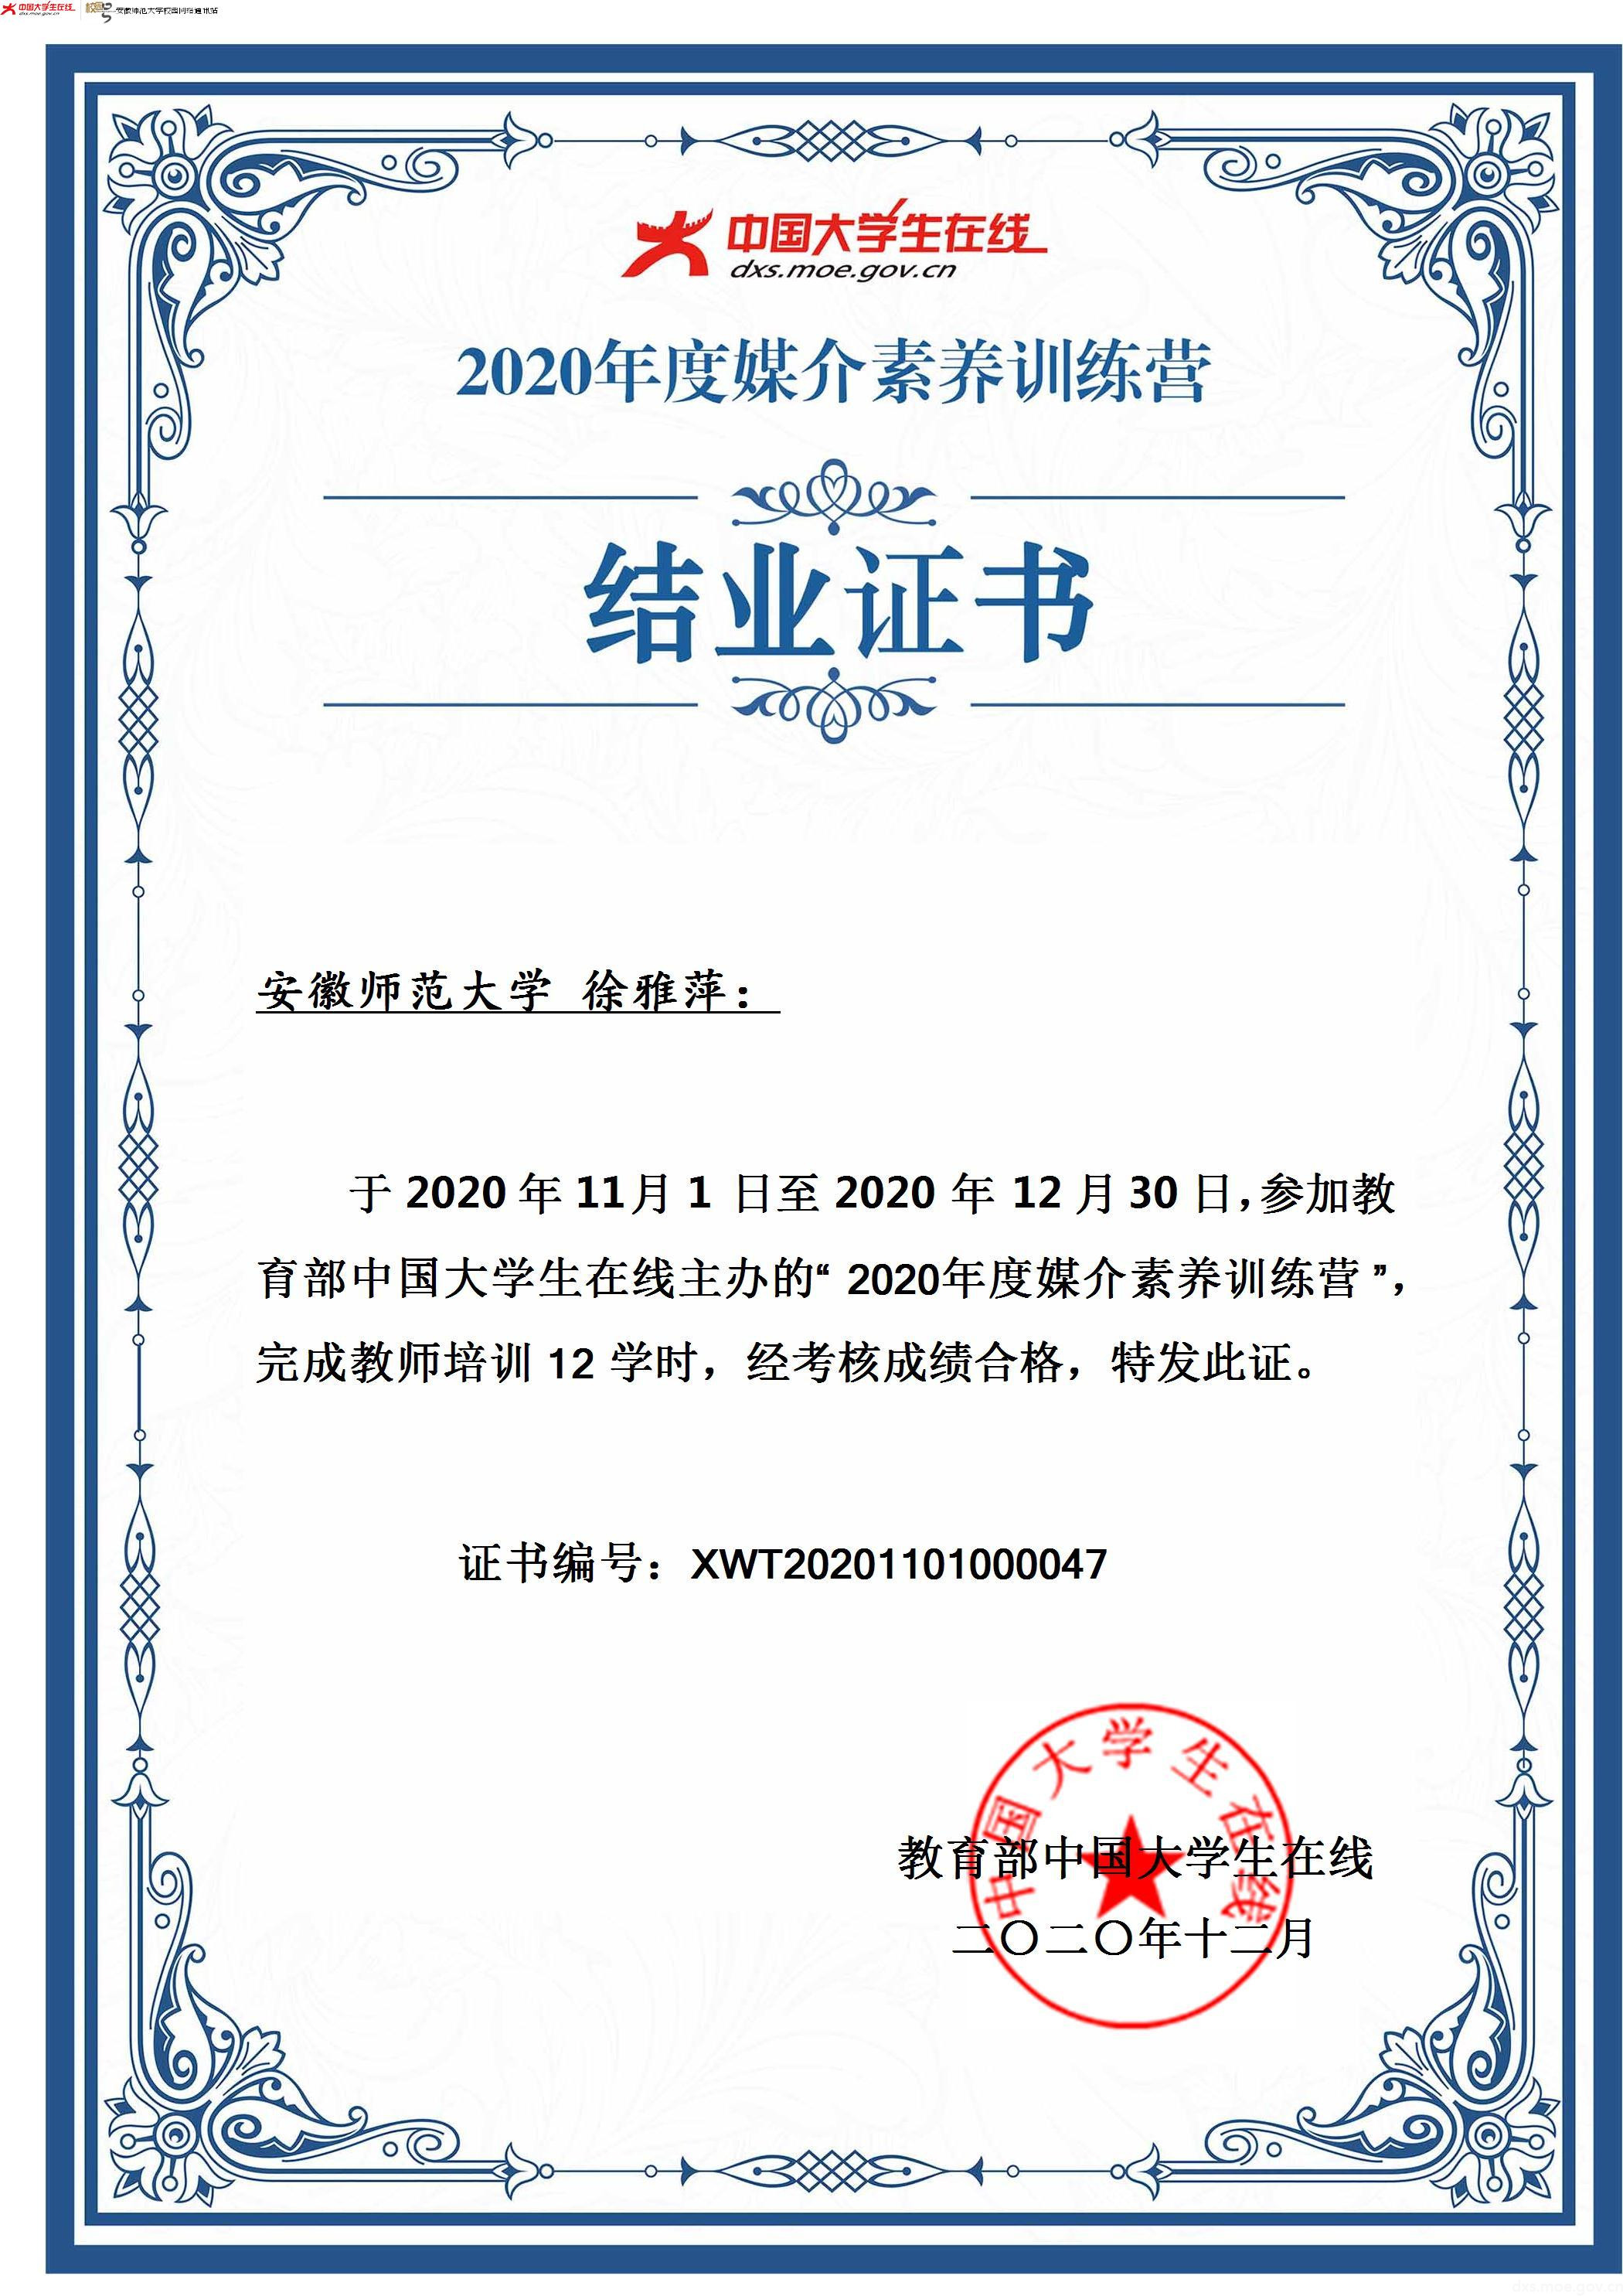 01 校网通指导老师徐雅萍学习课程后获得的证书。（安徽师范大学  徐雅萍 提供）